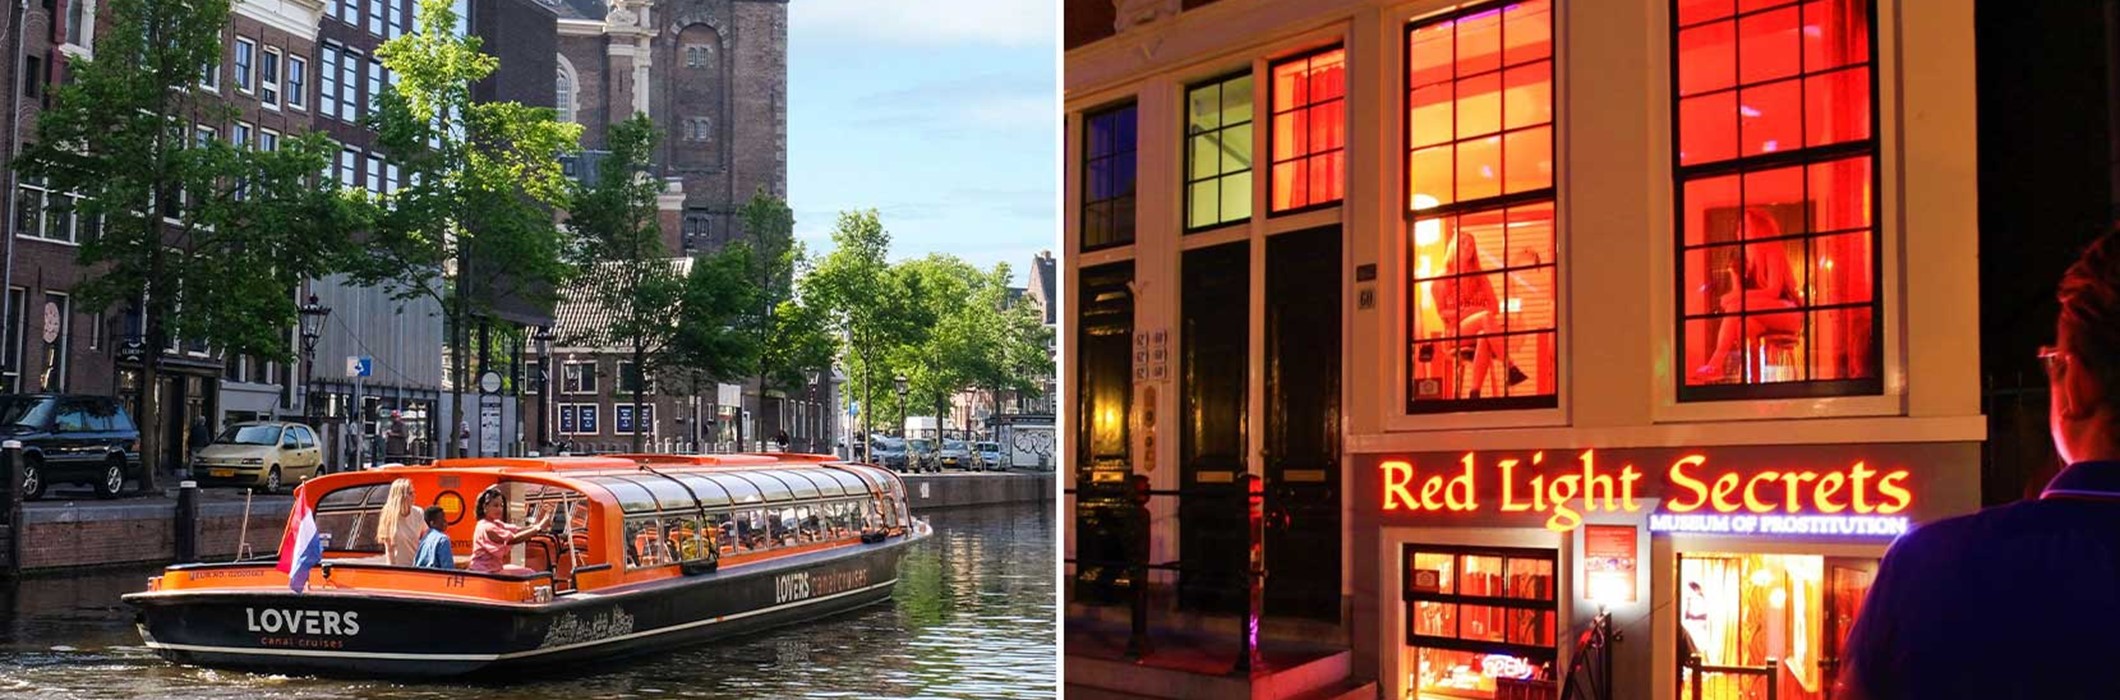 Red Light Secrets + Croisière sur les canaux d'Amsterdam